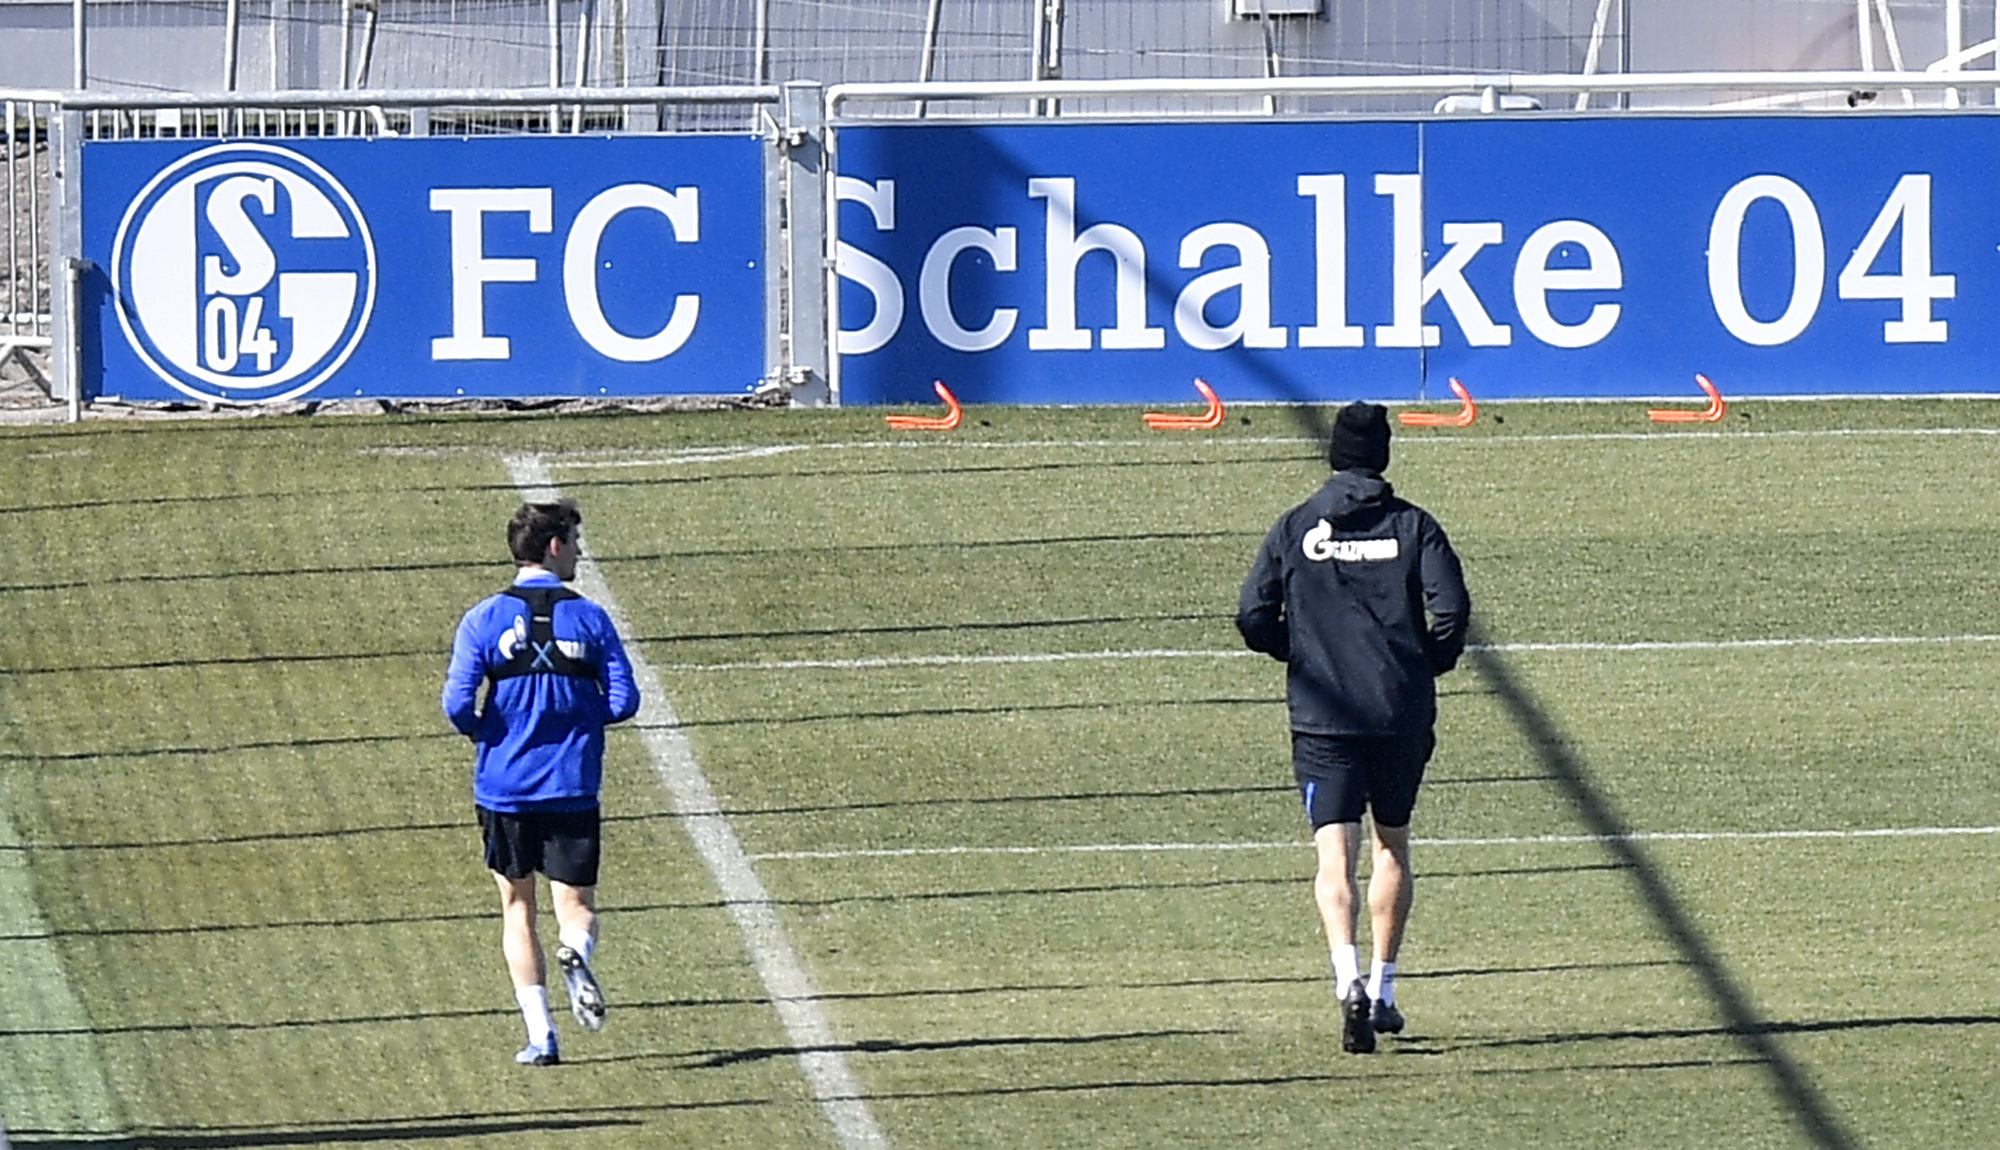 Futbalisti bundesligového klubu Schalke 04 trénujú v dostatočnej vzdialenosti od seba počas koronavírusovej pandémie v Gelsenkirchene 1. apríla 2020